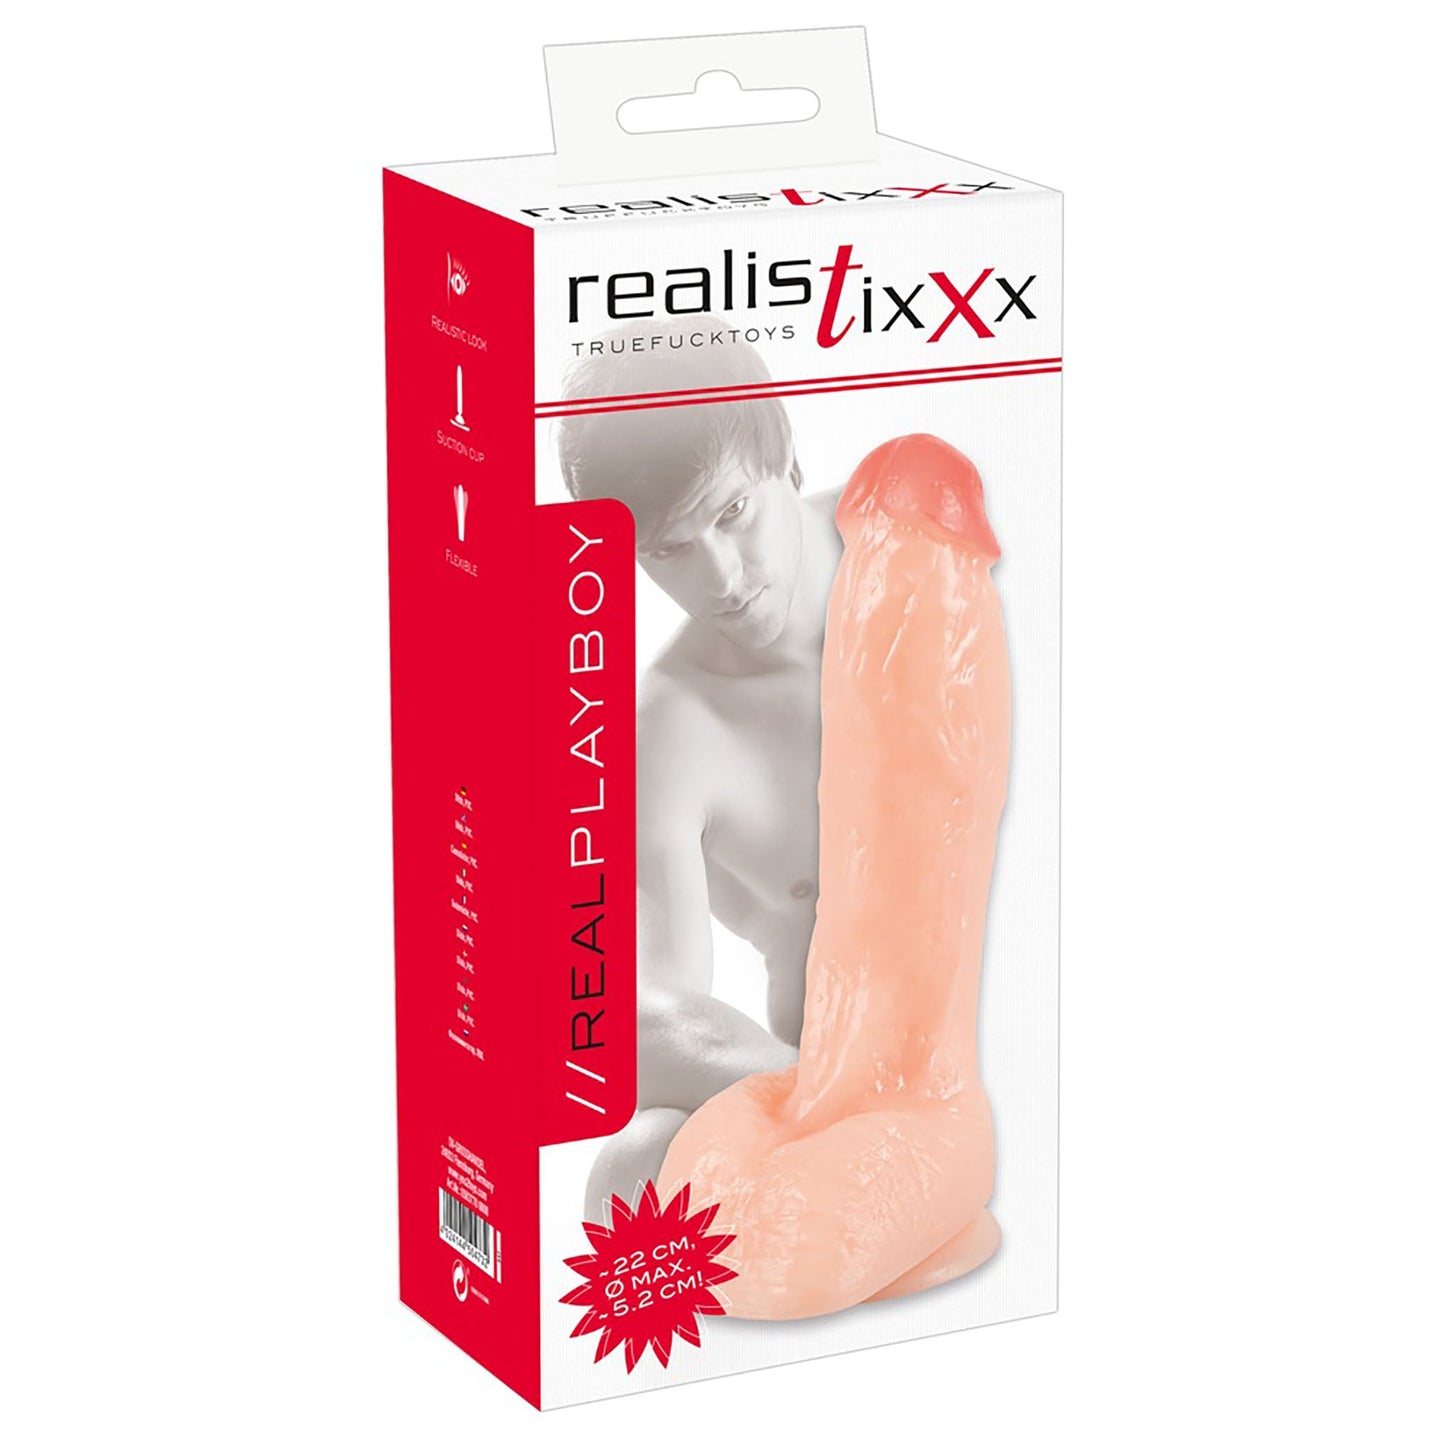 Realistixx Real Playboy, realistischer Dildo mit großer Eichel und Hoden und Saugfuß in Verpackung